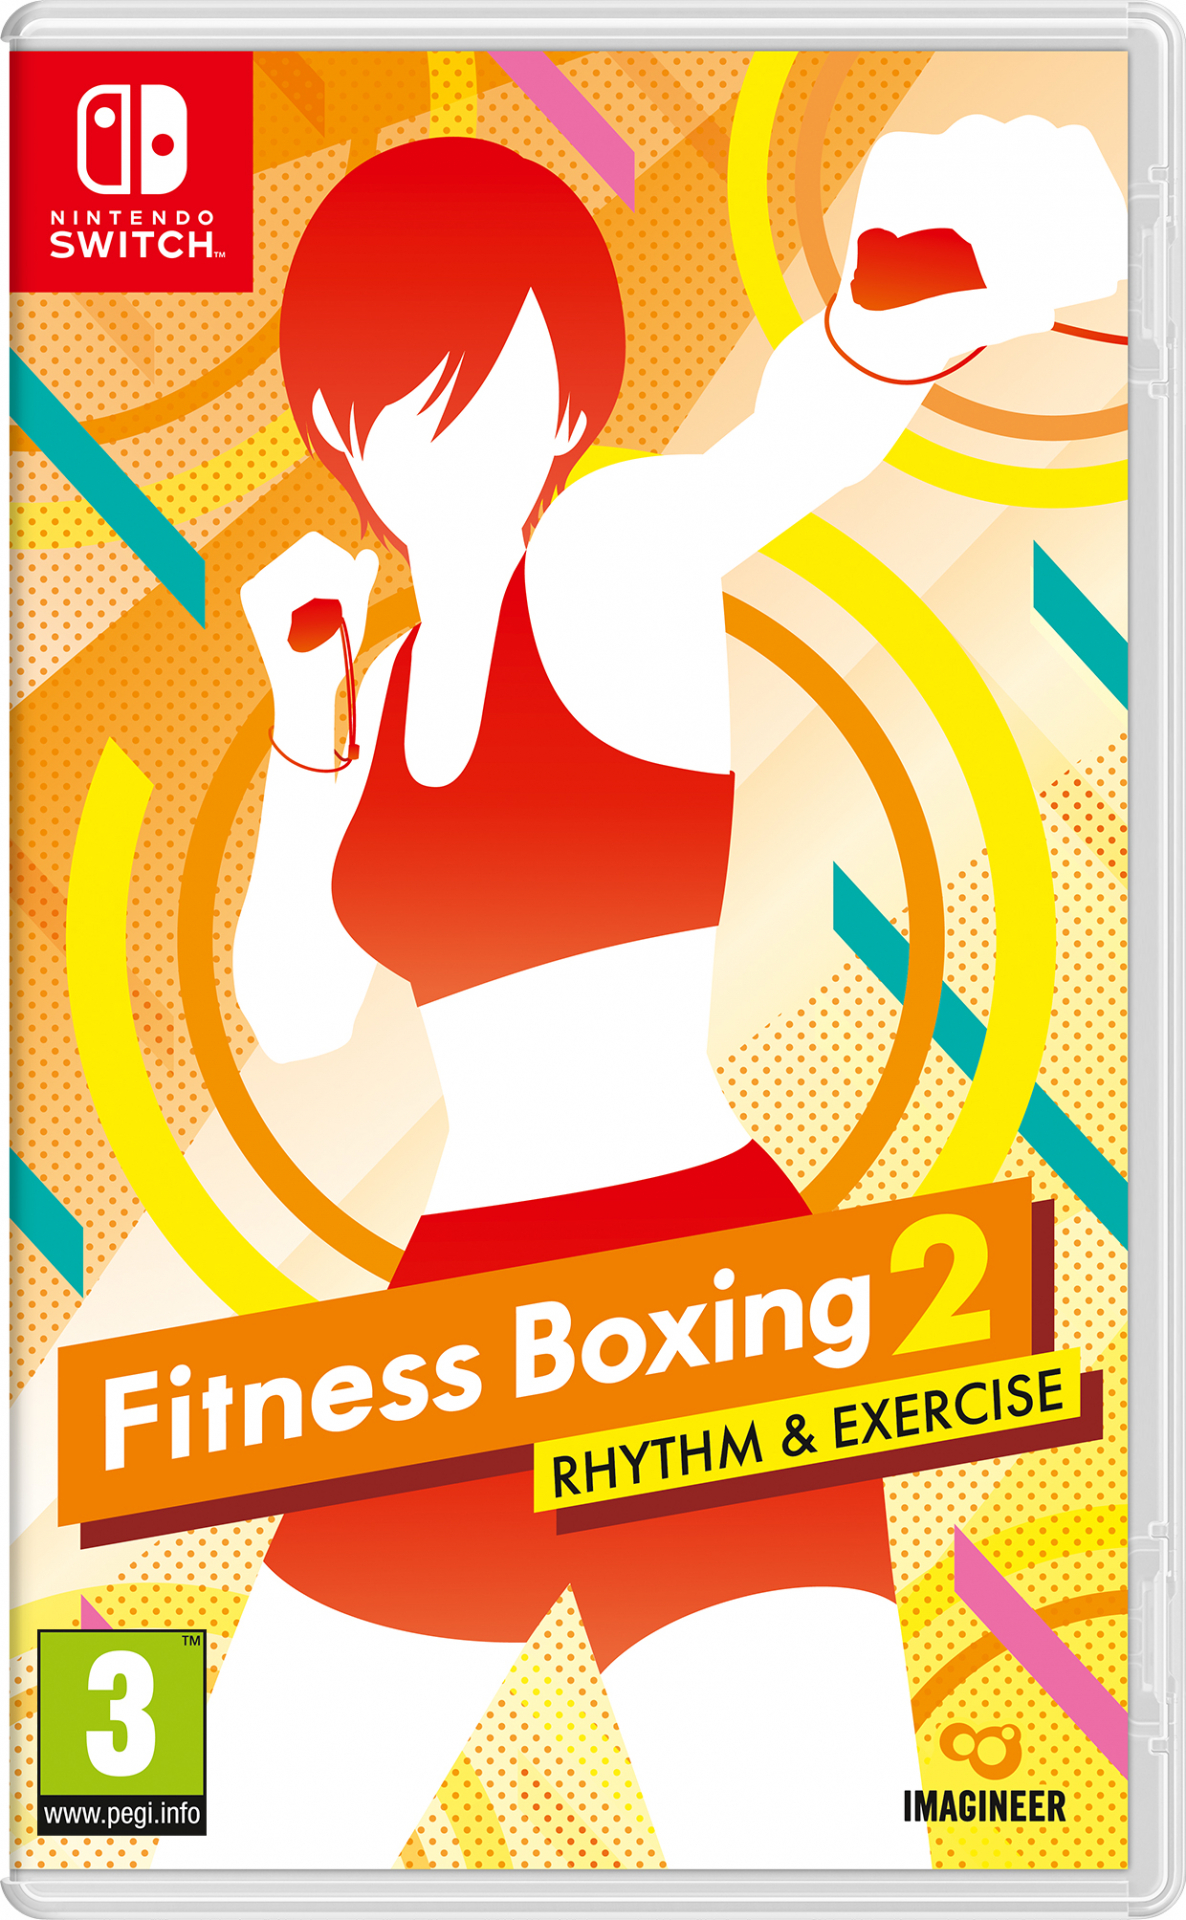 Nintendo Fitness Boxing 2 Rhythm & Exercise Nintendo Switch